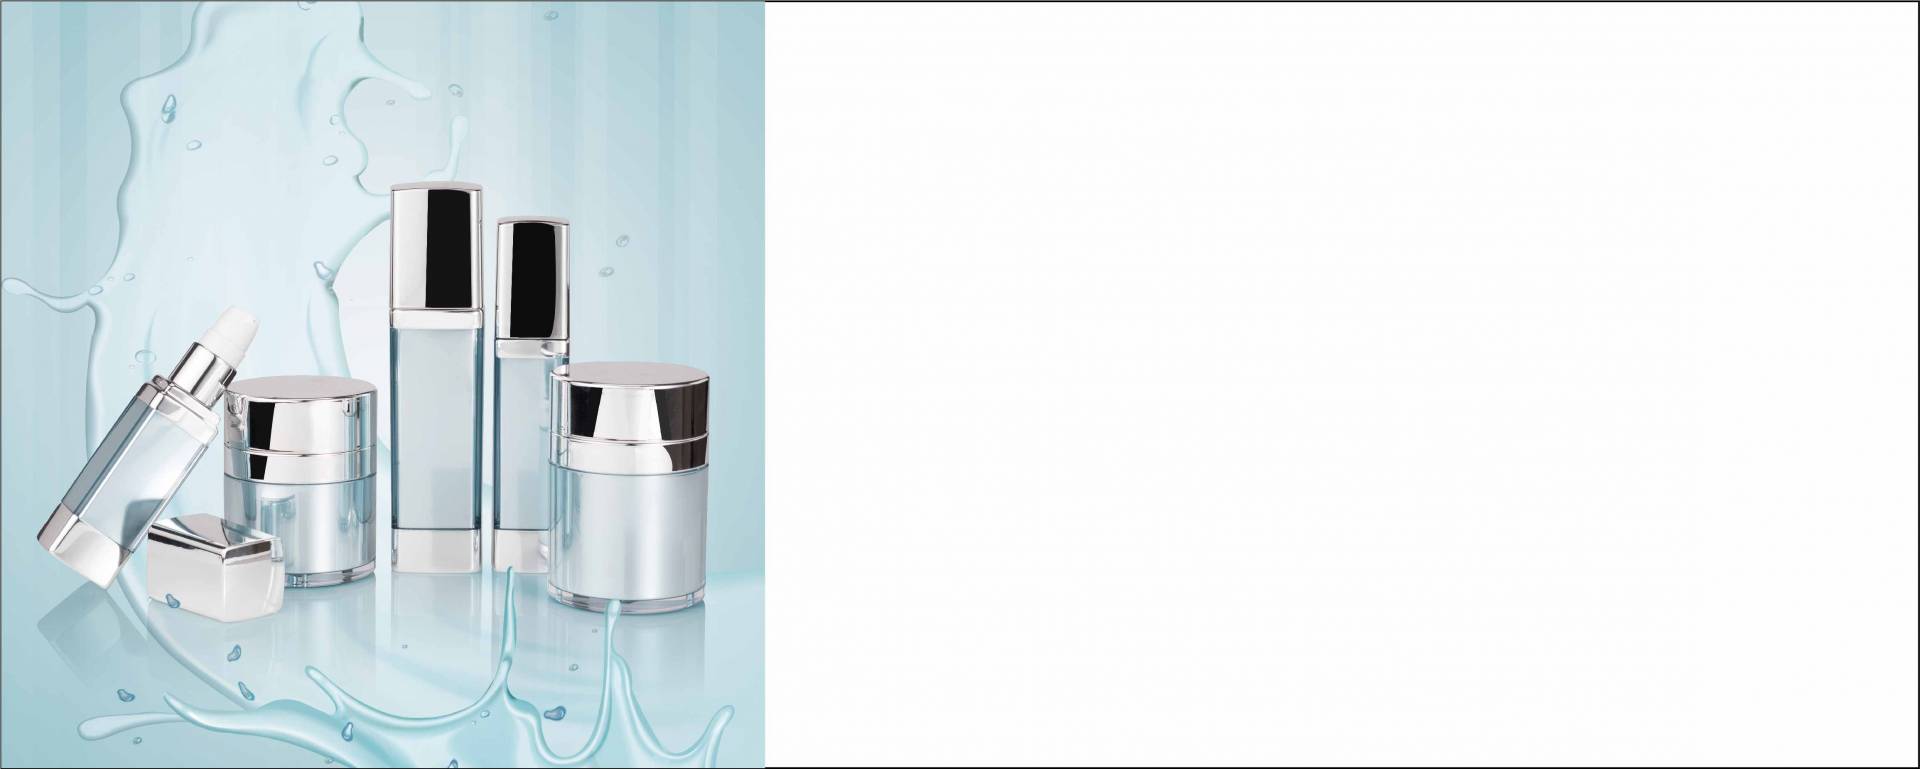 功能性真空亞克力 化妝品包材 各種真空亞克力瓶器，讓您的保養品更加衛生、穩定、零殘留